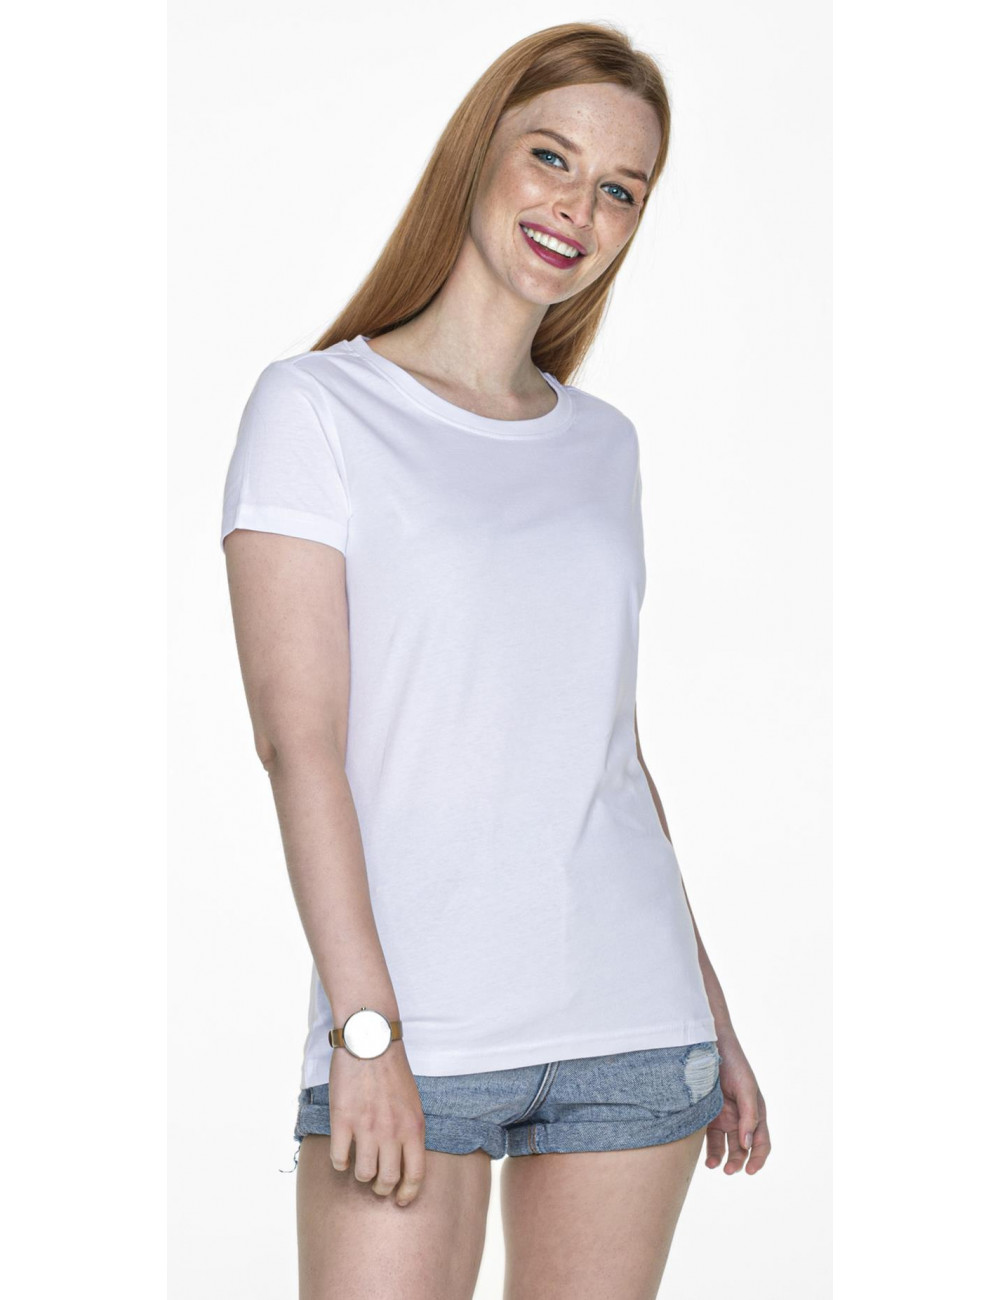 Schweres, schweres Damen-T-Shirt in Weiß ohne Etikett von Promostars